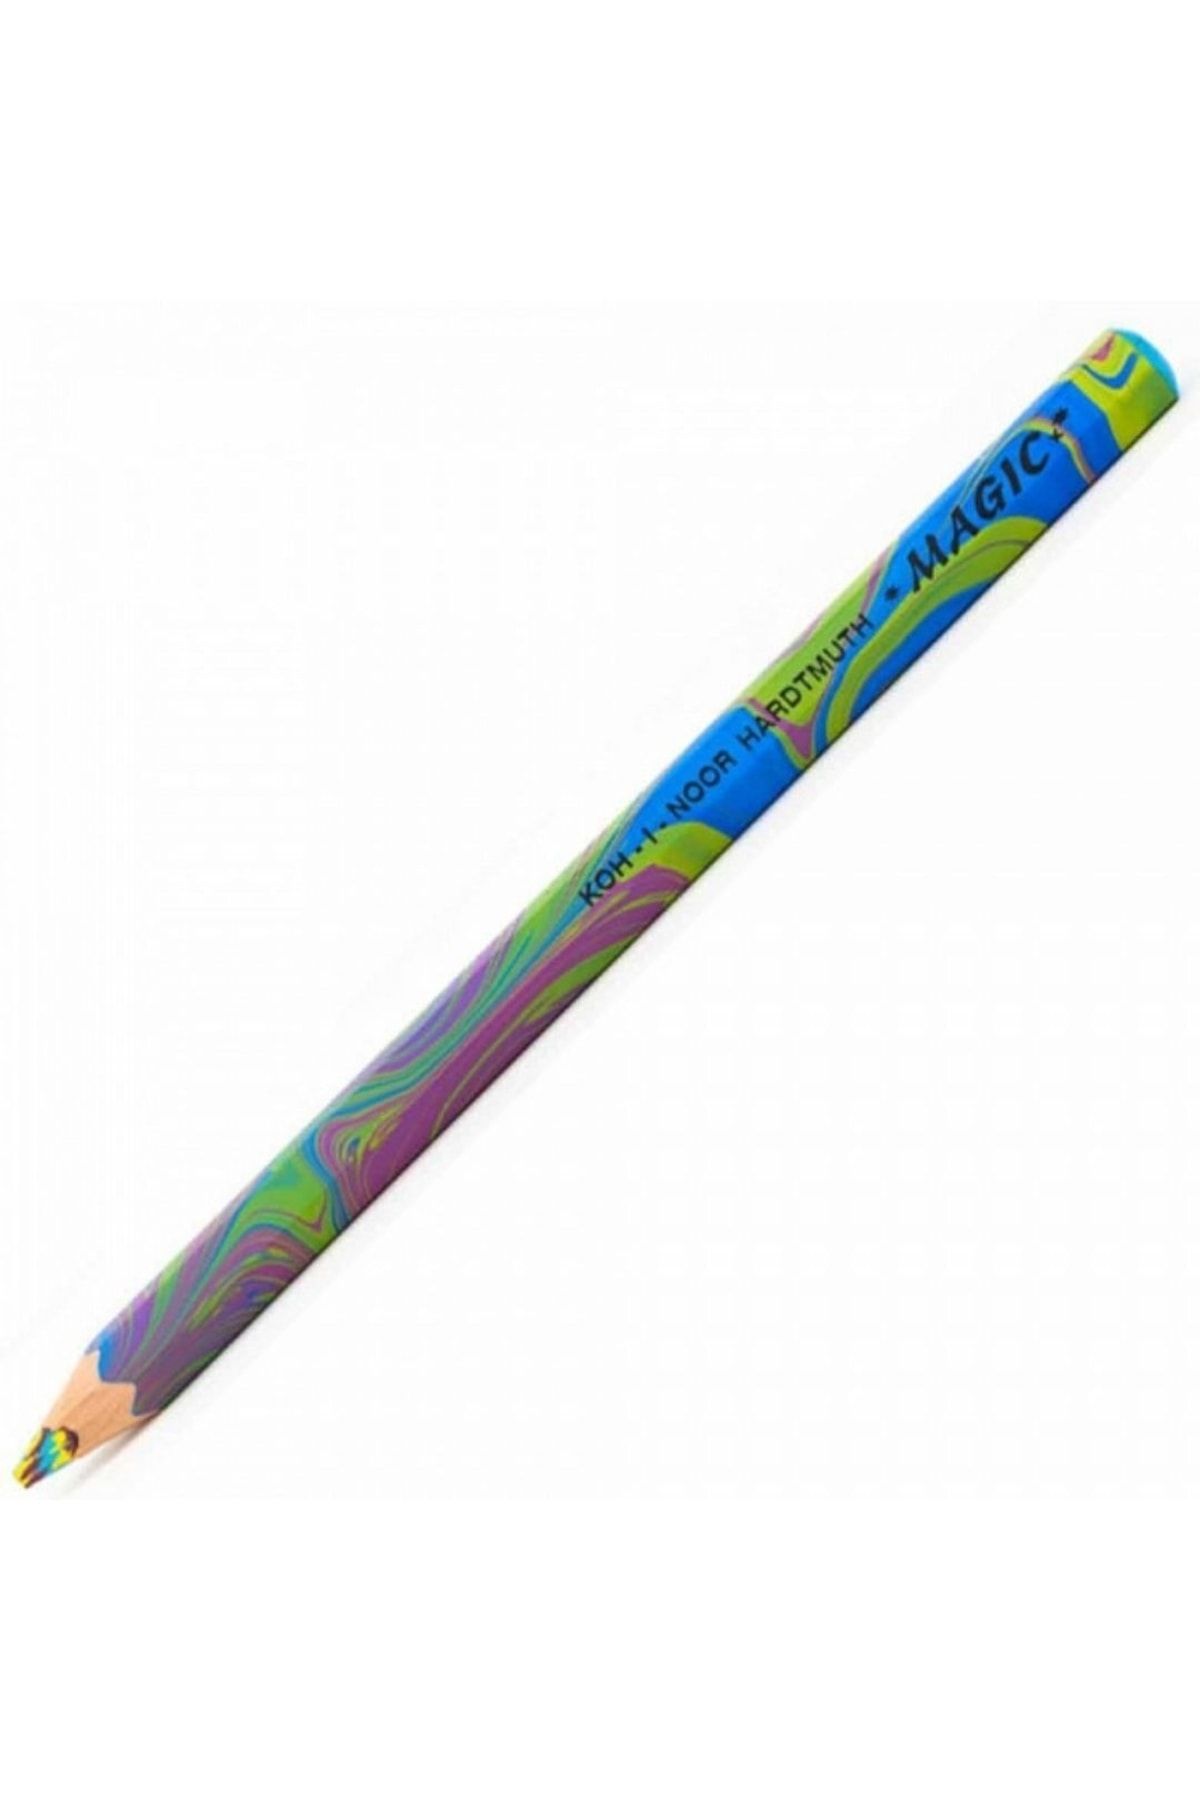 Kohinoor Jumbo Magic Pencil Sihirli Kuruboya Kalemi Tropical 3405